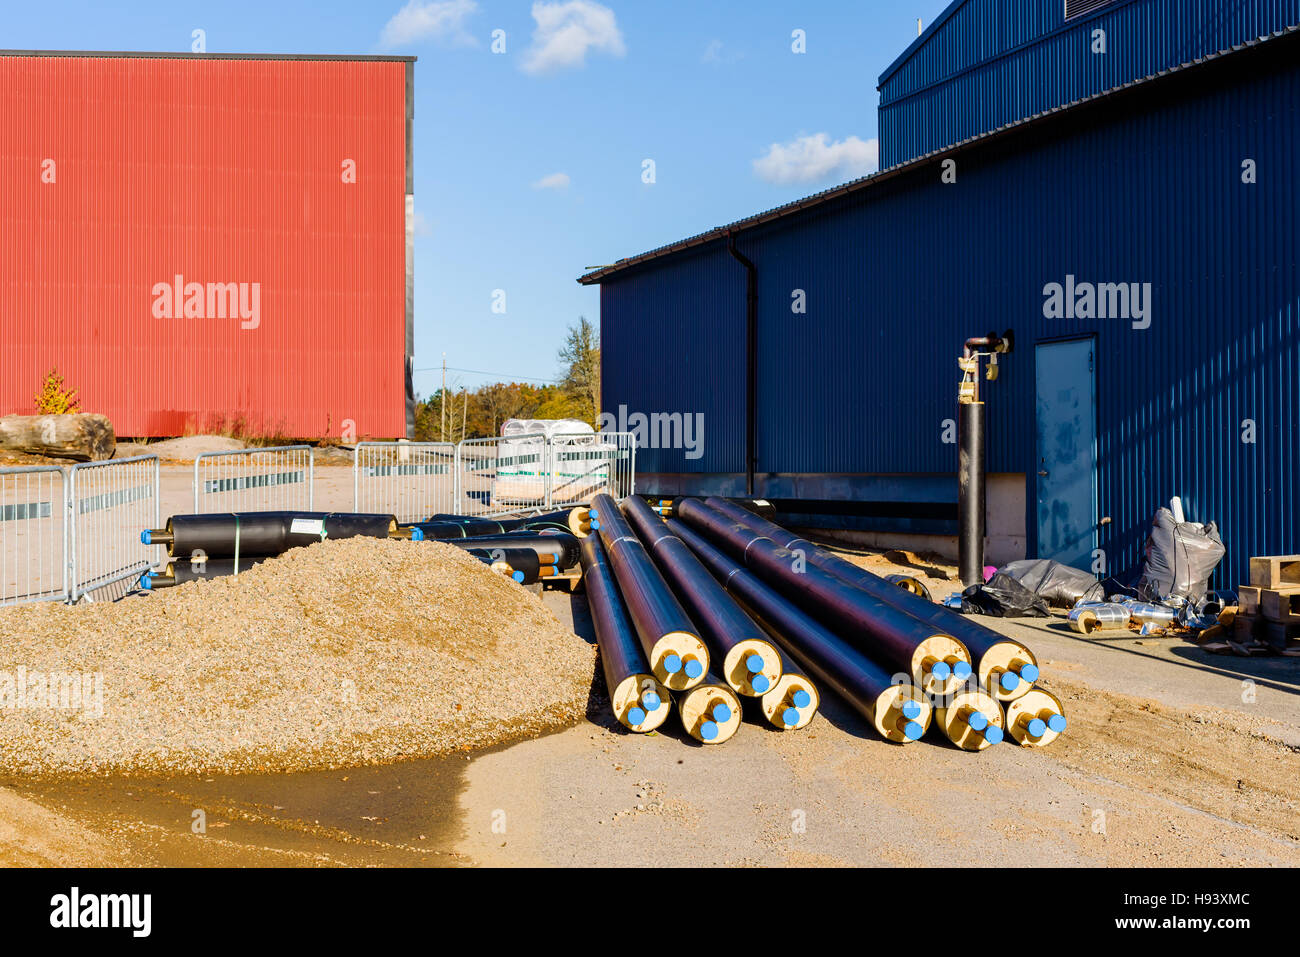 Brakne Hoby, Svezia - 29 Ottobre 2016: documentario di pubblico accesso area industriale. Impianto di riscaldamento le sezioni di tubazioni a terra all'esterno dell'edificio. Foto Stock